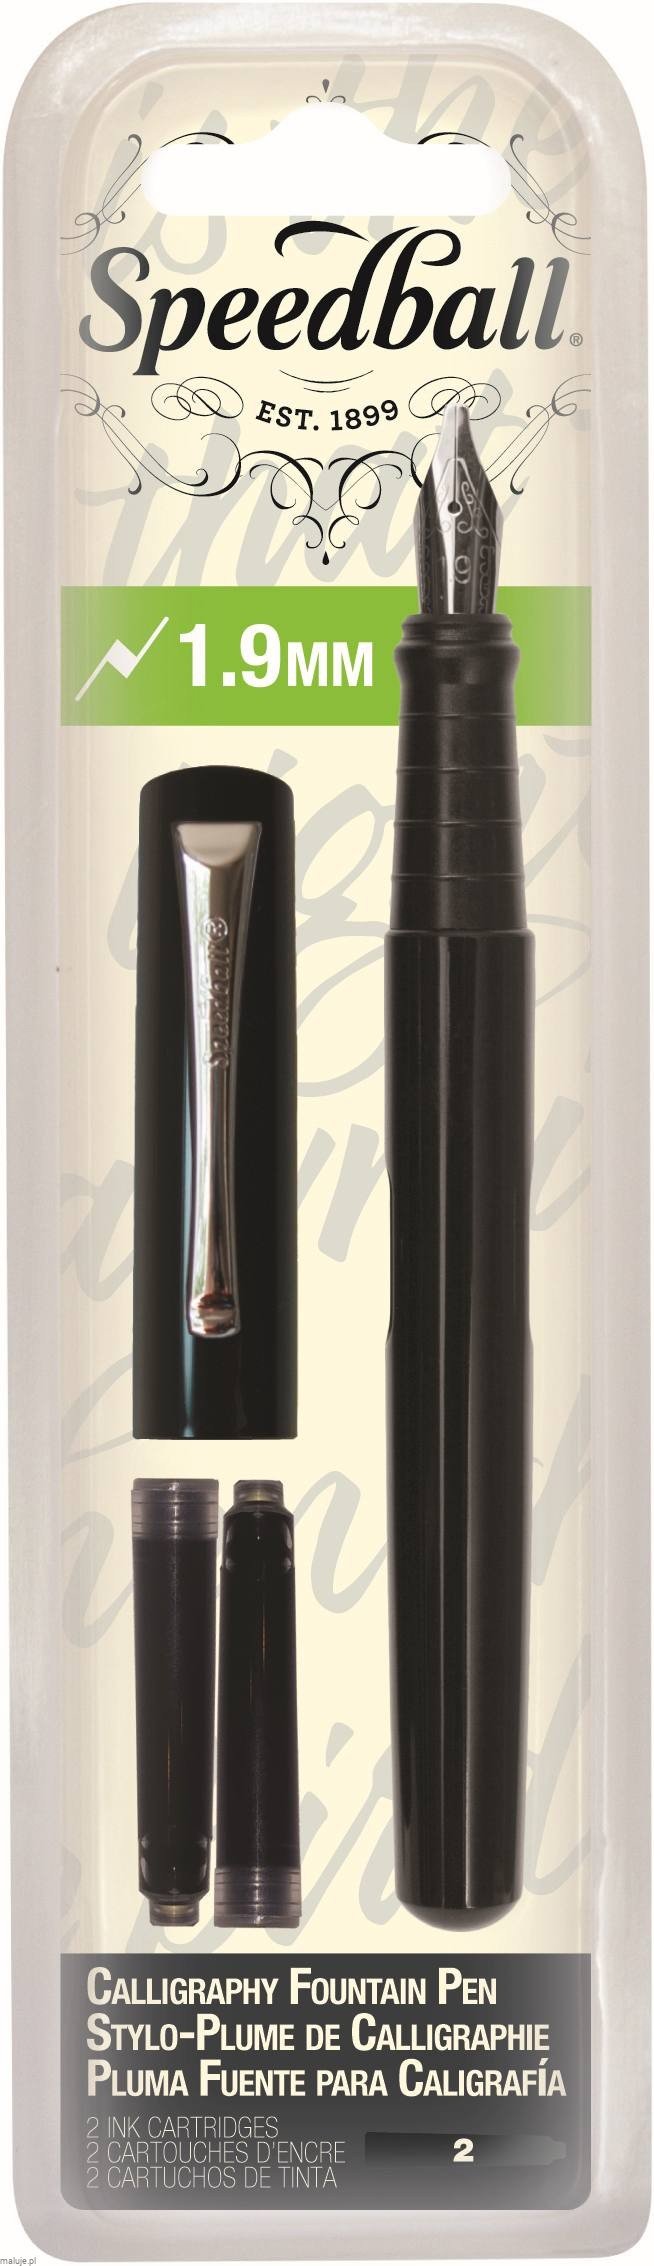 Speedball Pióro wieczne do kaligrafii Fountaine Pen 1,9mm (broad)